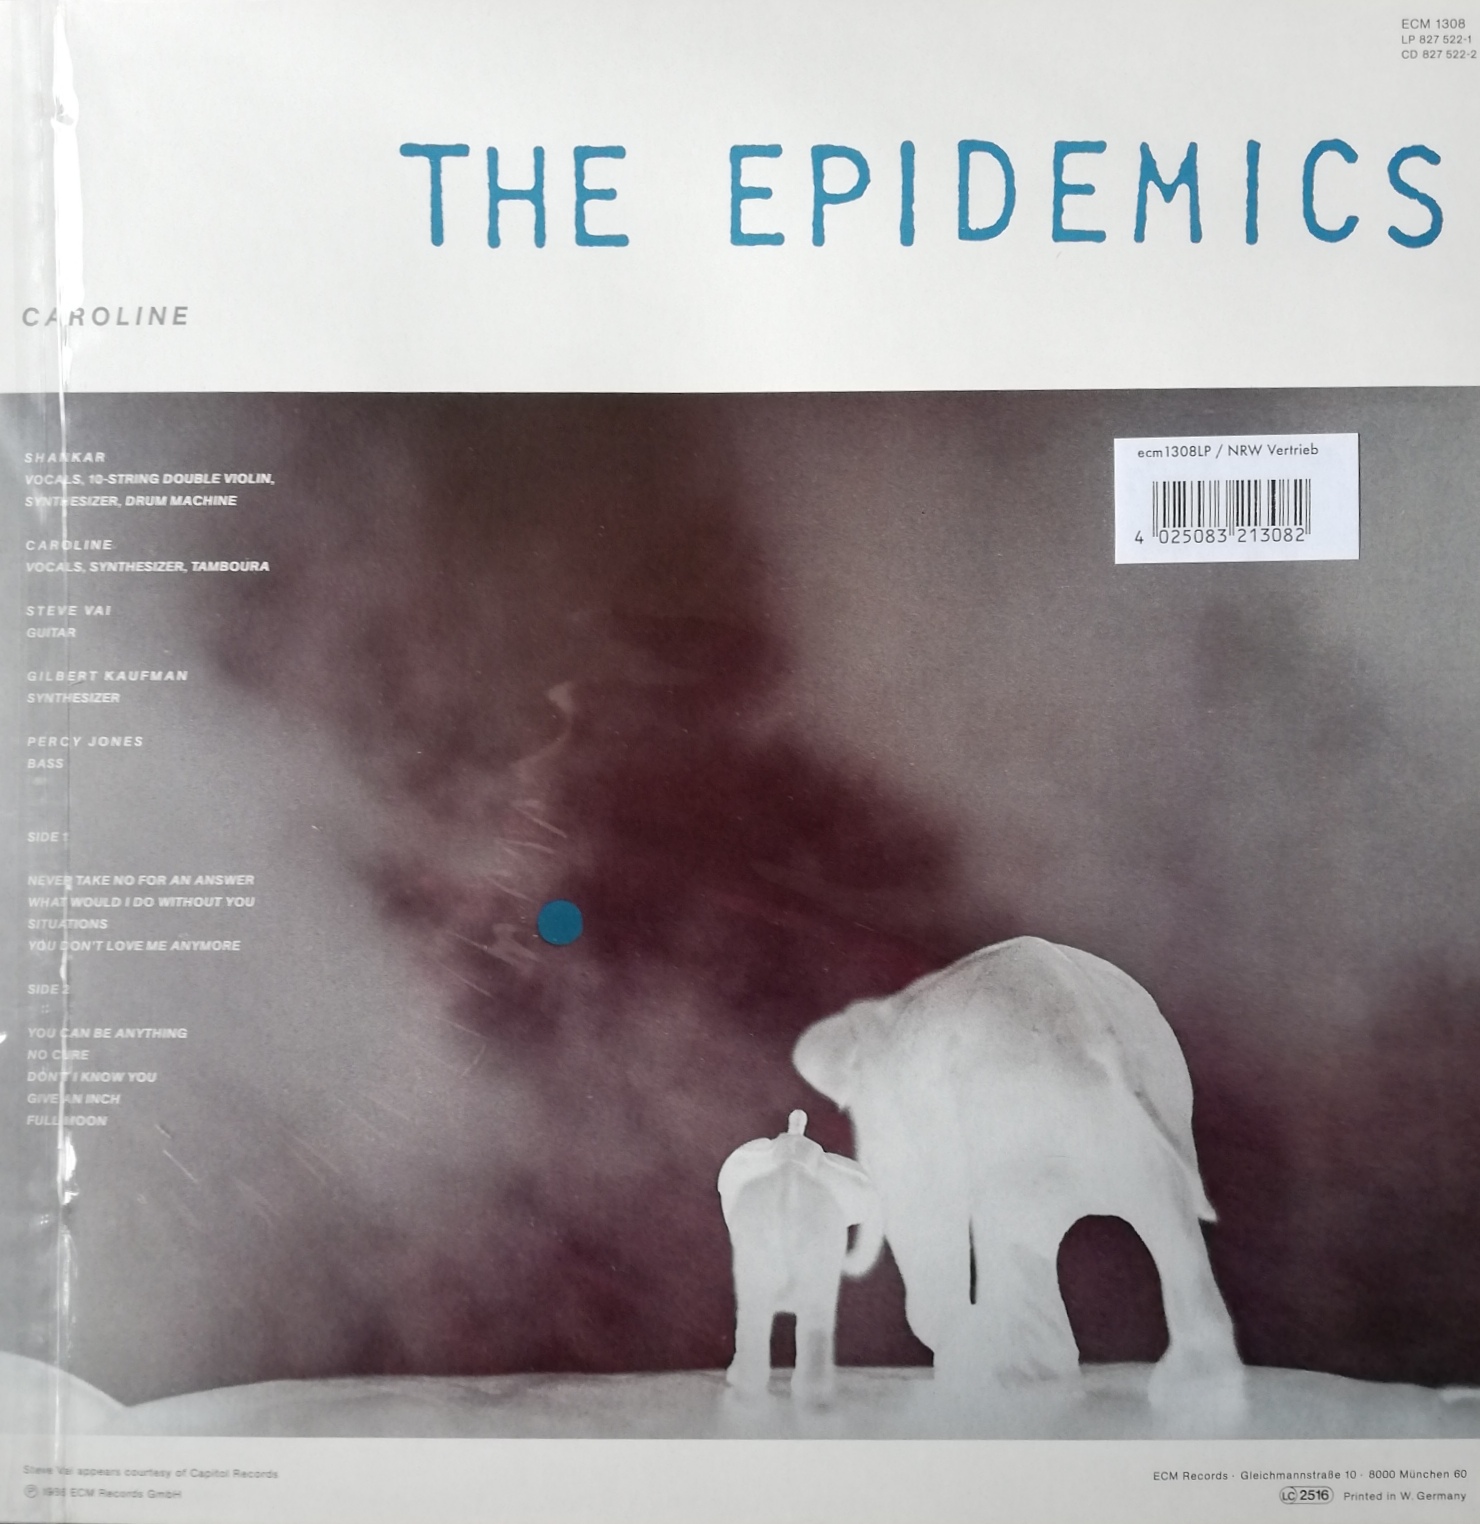 Okładka płyty winylowej artysty Shankar o tytule THE EPIDEMICS